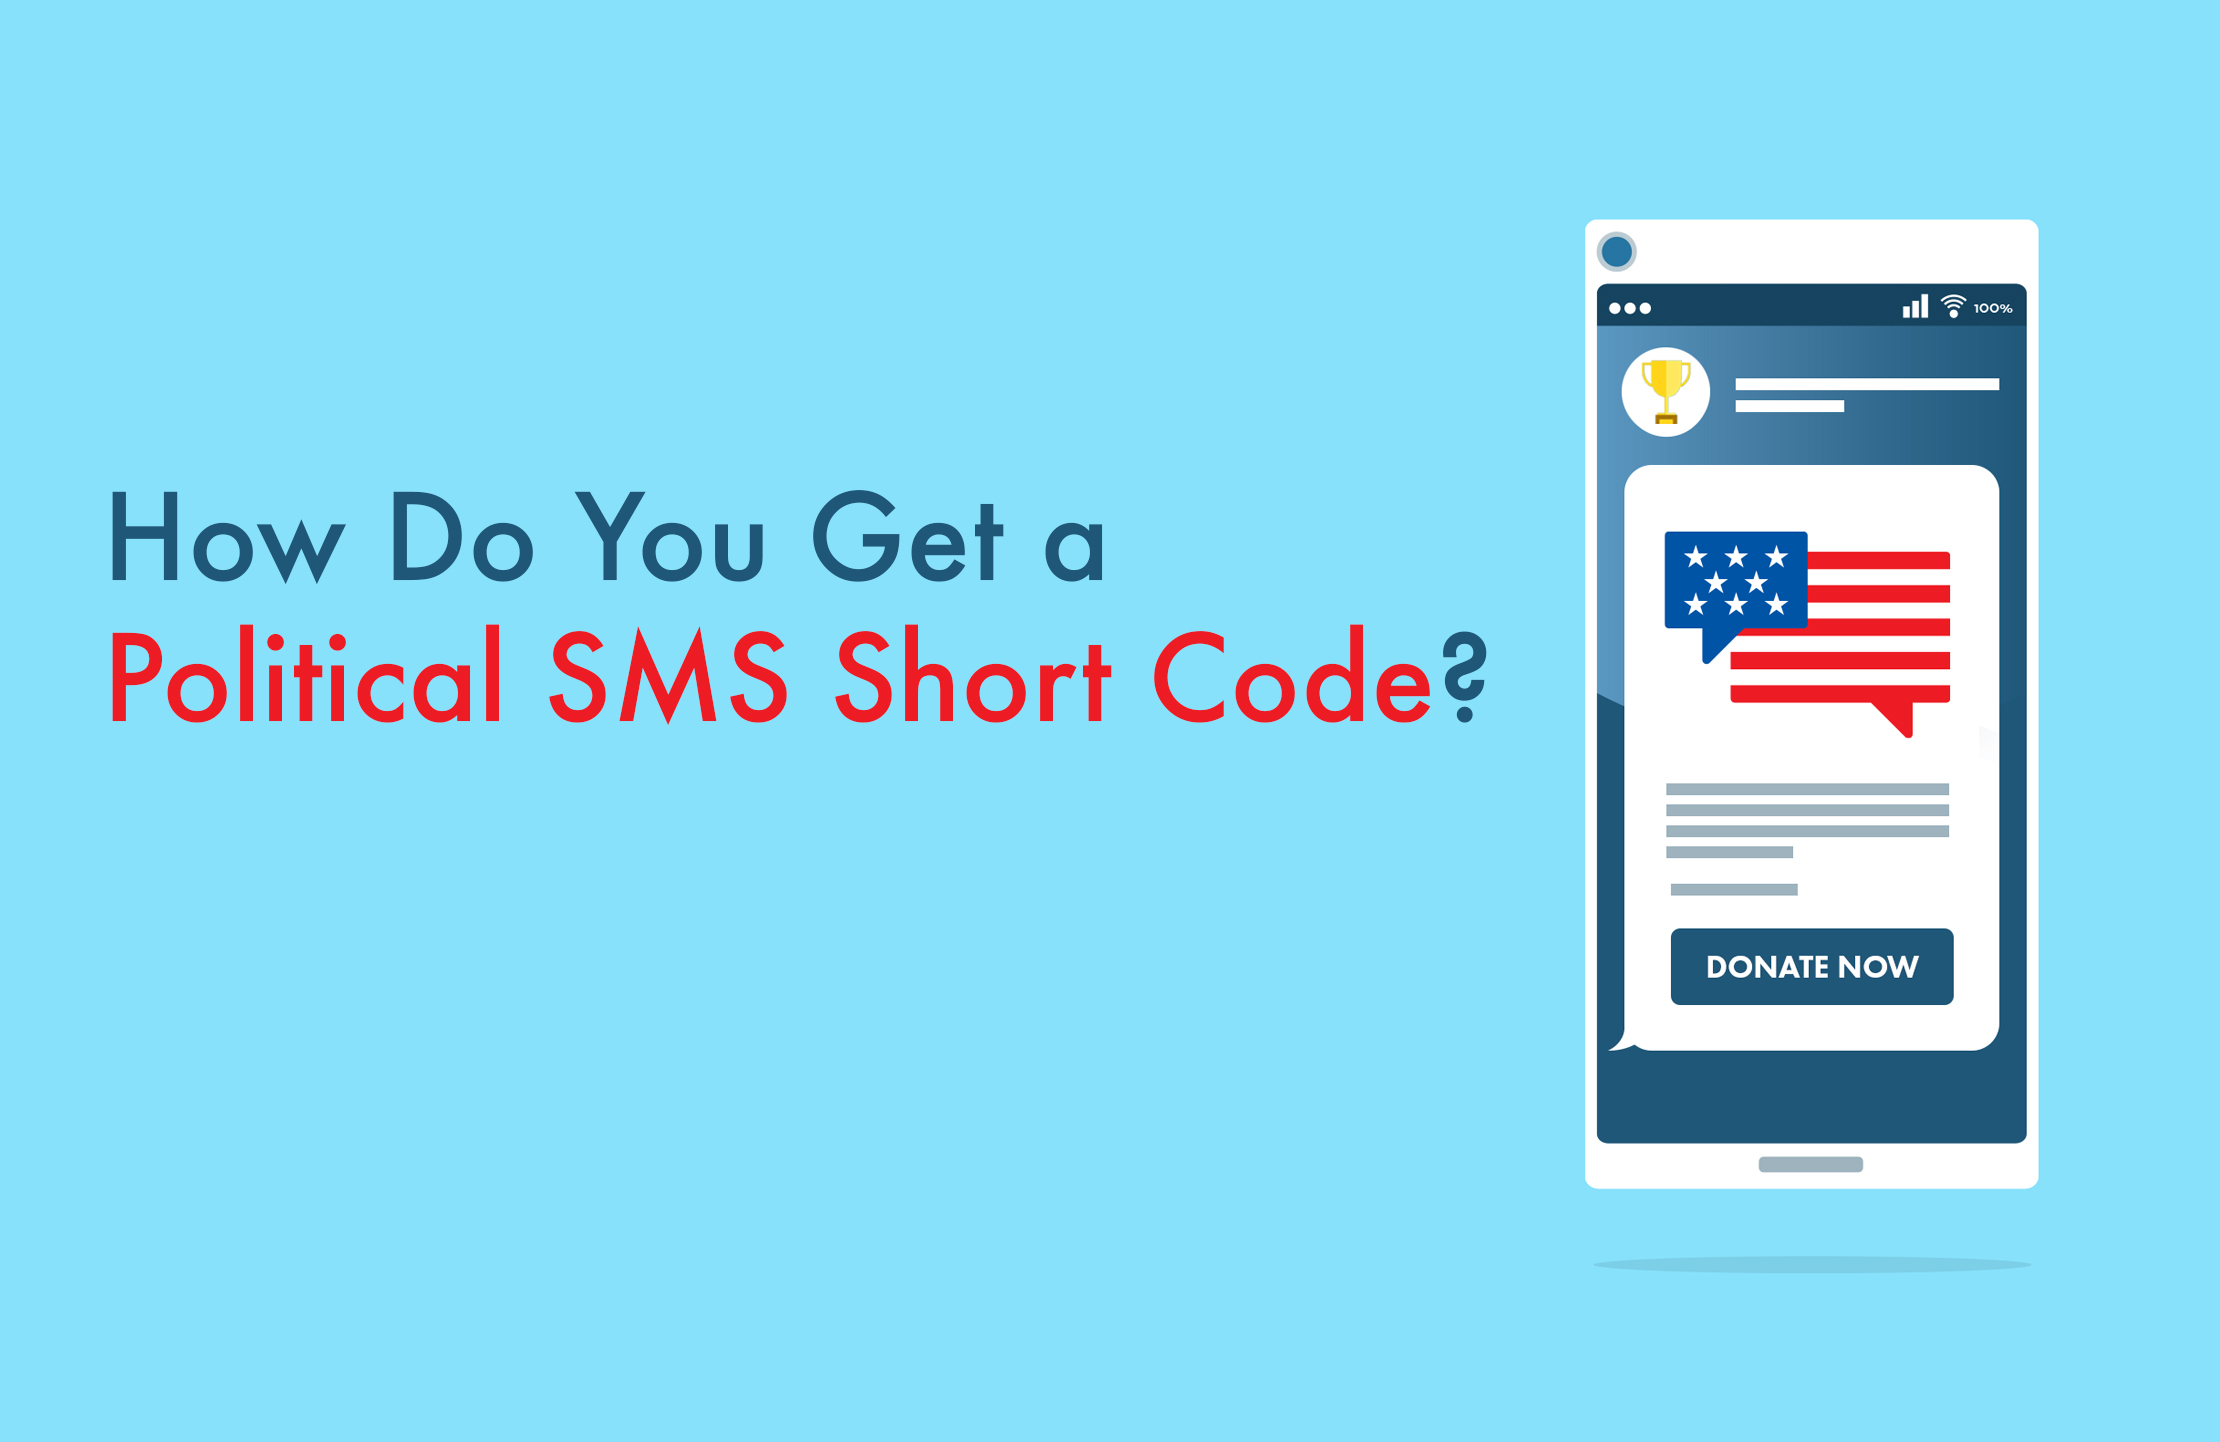 How Do You Get a Political SMS Short Code